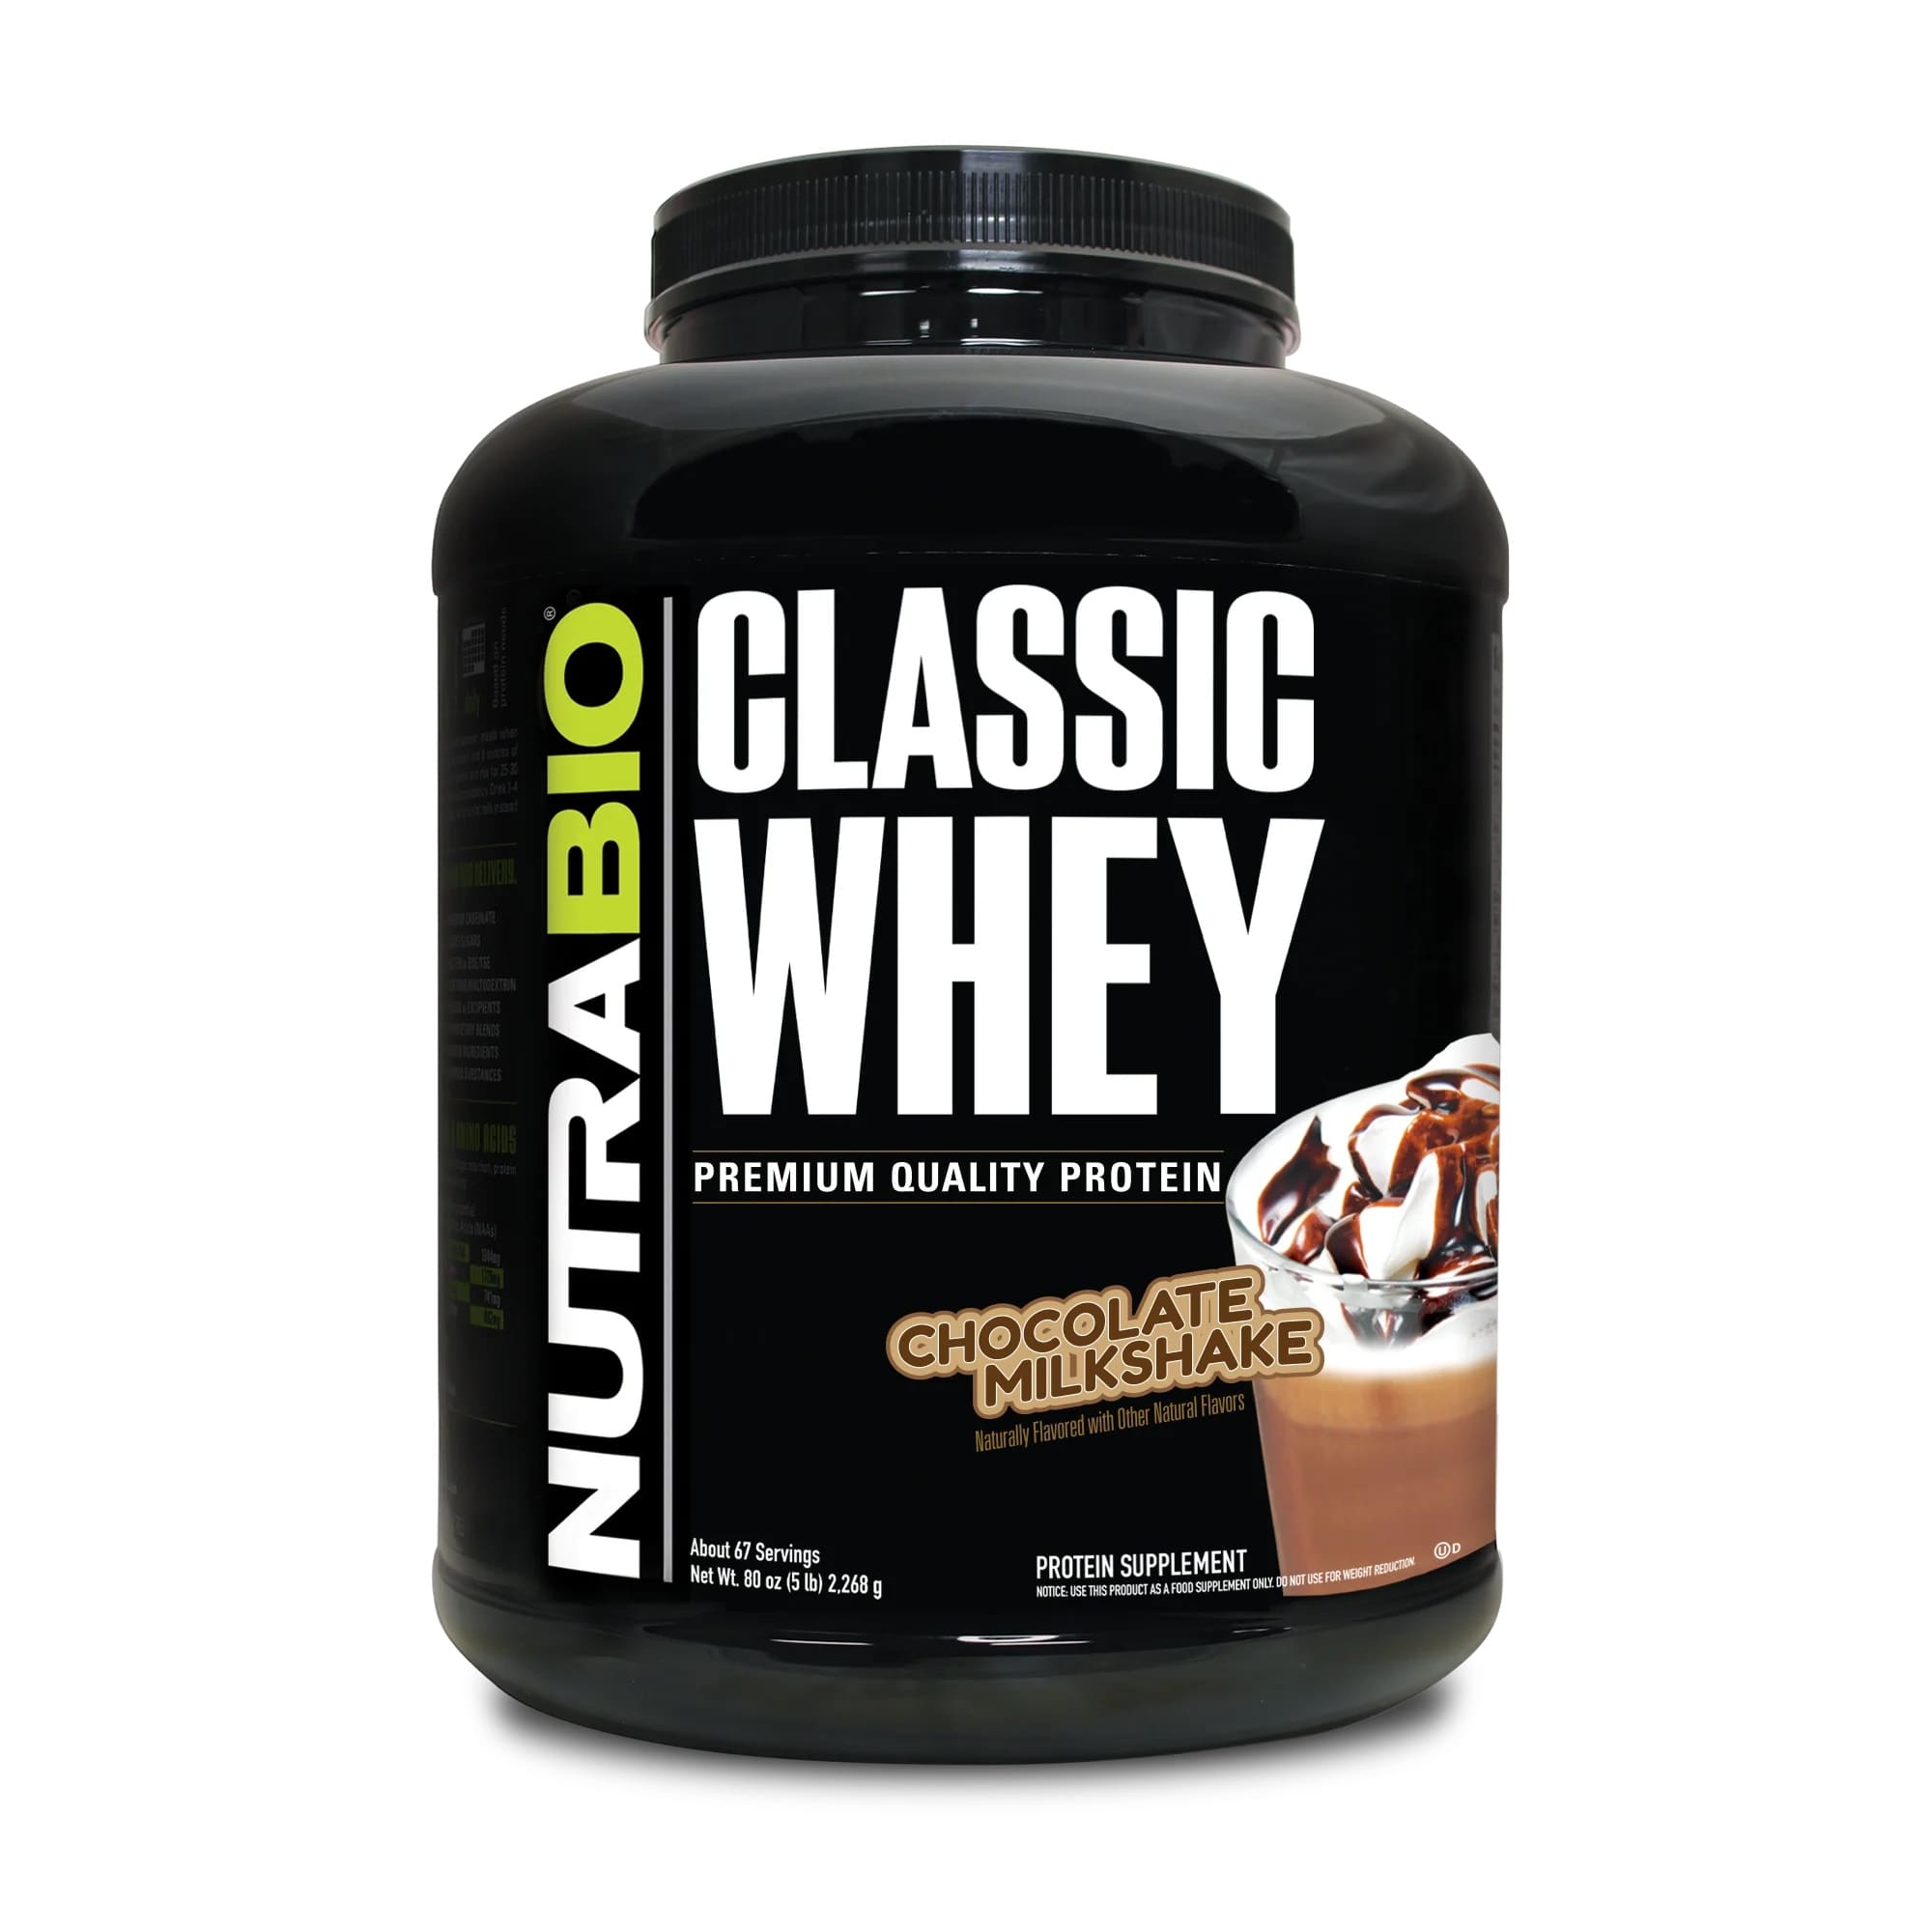 Classic-Whey-Protein-Chocolate-MilkShake.jpg